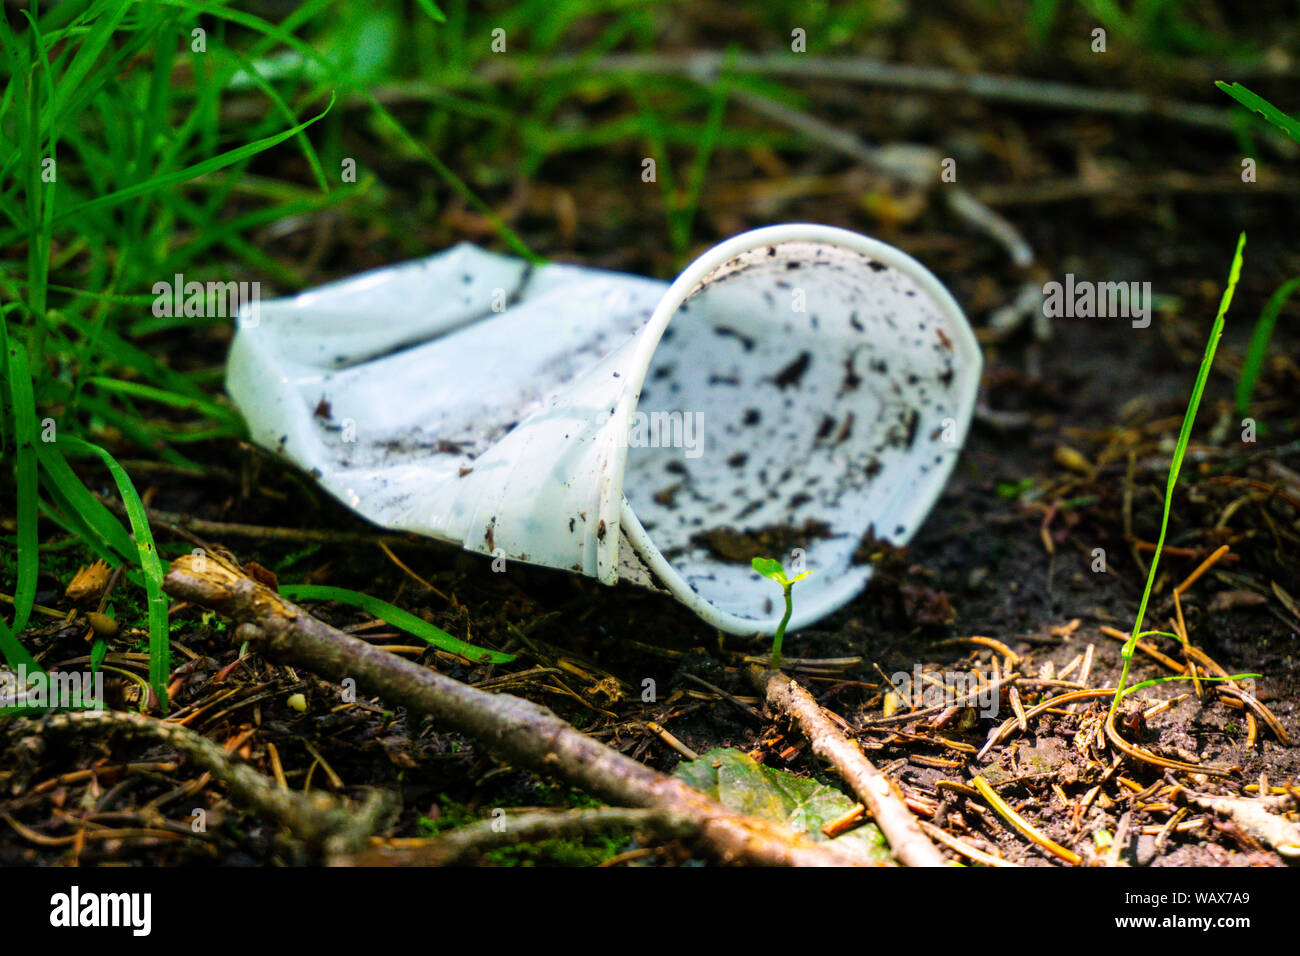 Un bicchiere di plastica si trova in una zona boscosa inquinare l'ambiente mentre le piante giovani cercano di crescere, Foto Stock